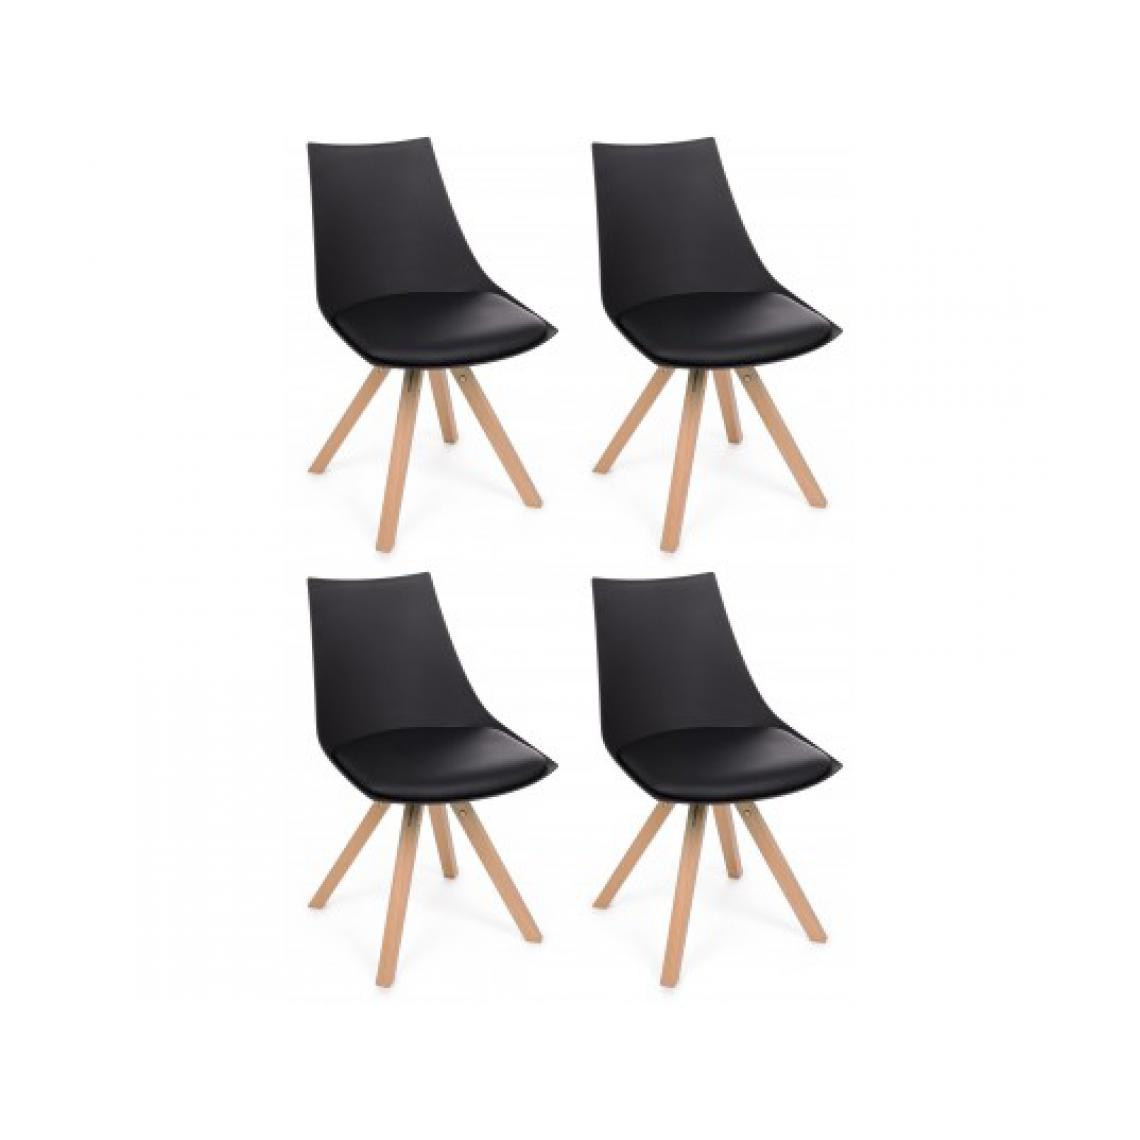 Bizzotto - Chaise Mayer lot de 4 chaises noir et bois - Chaises